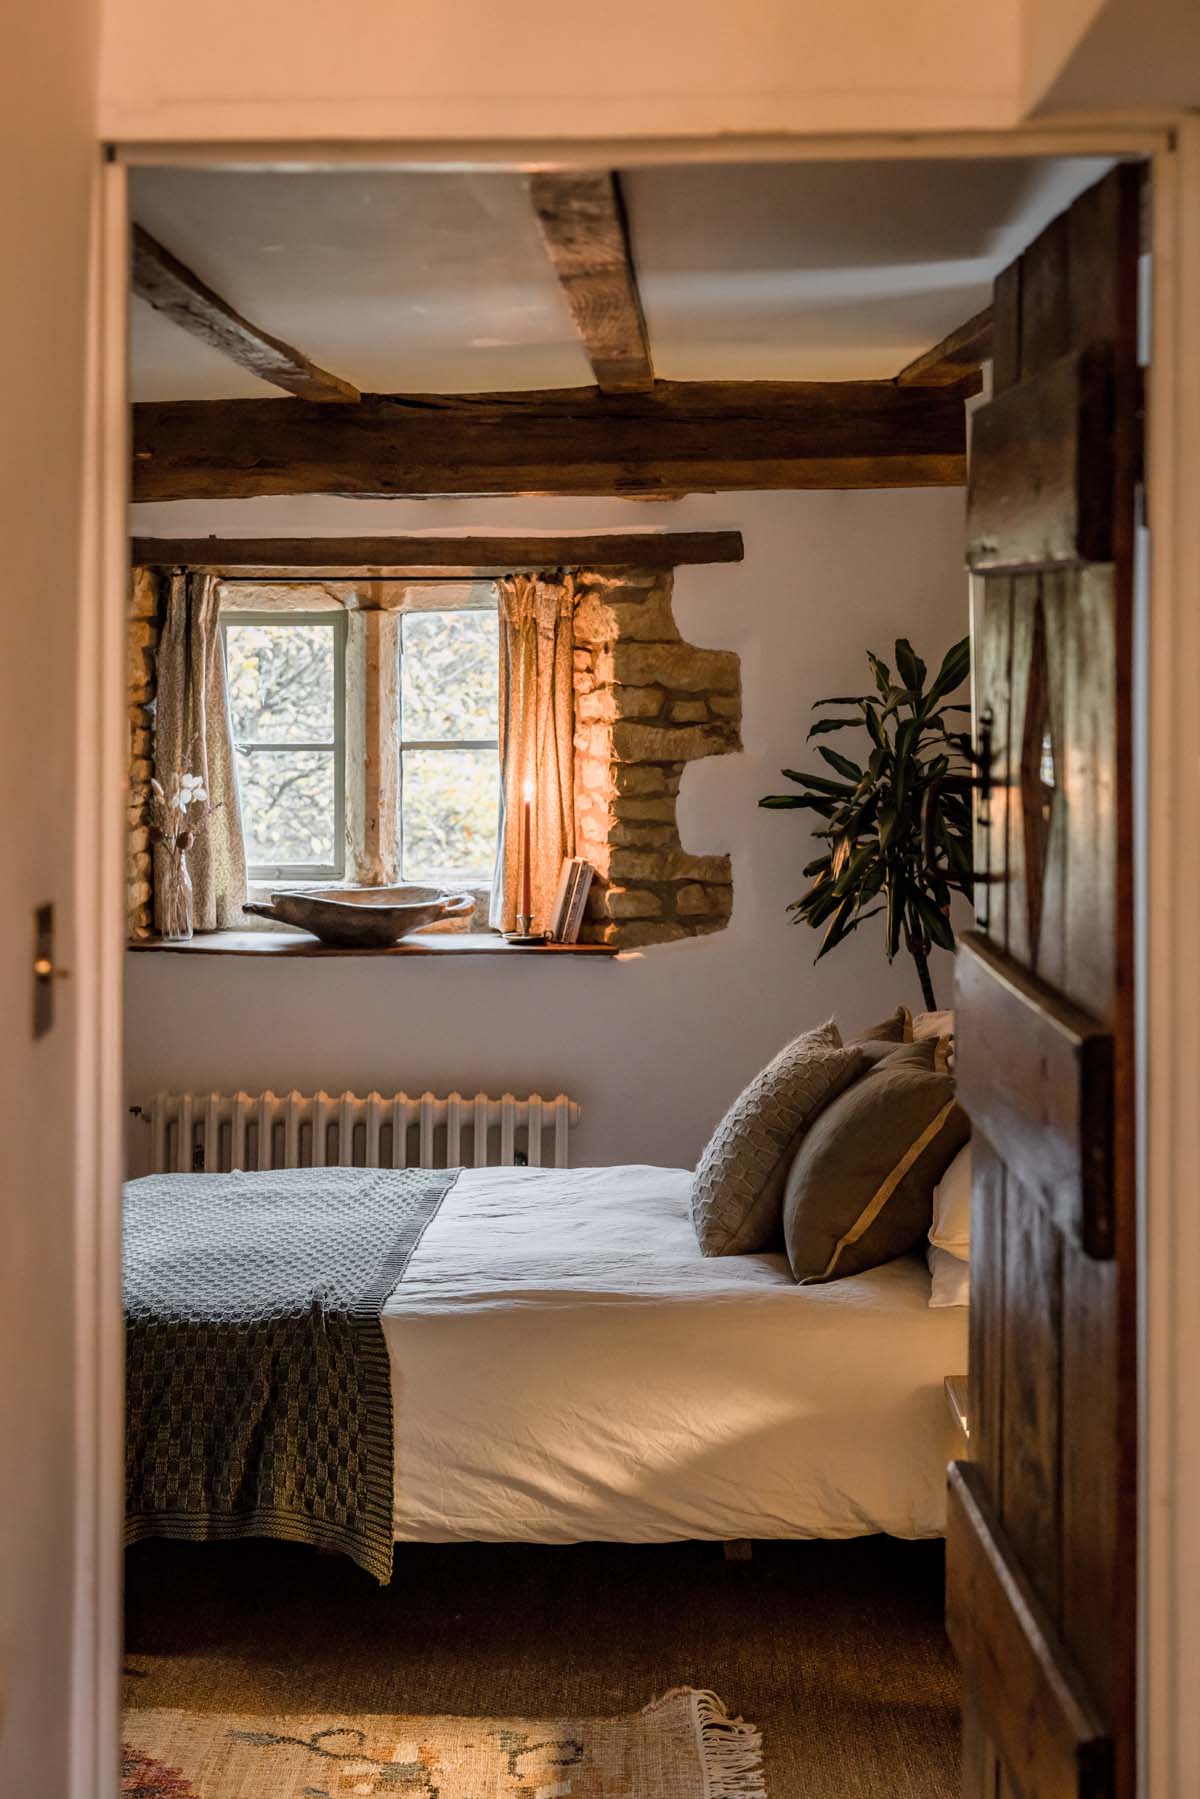 view into bedroom through doorway